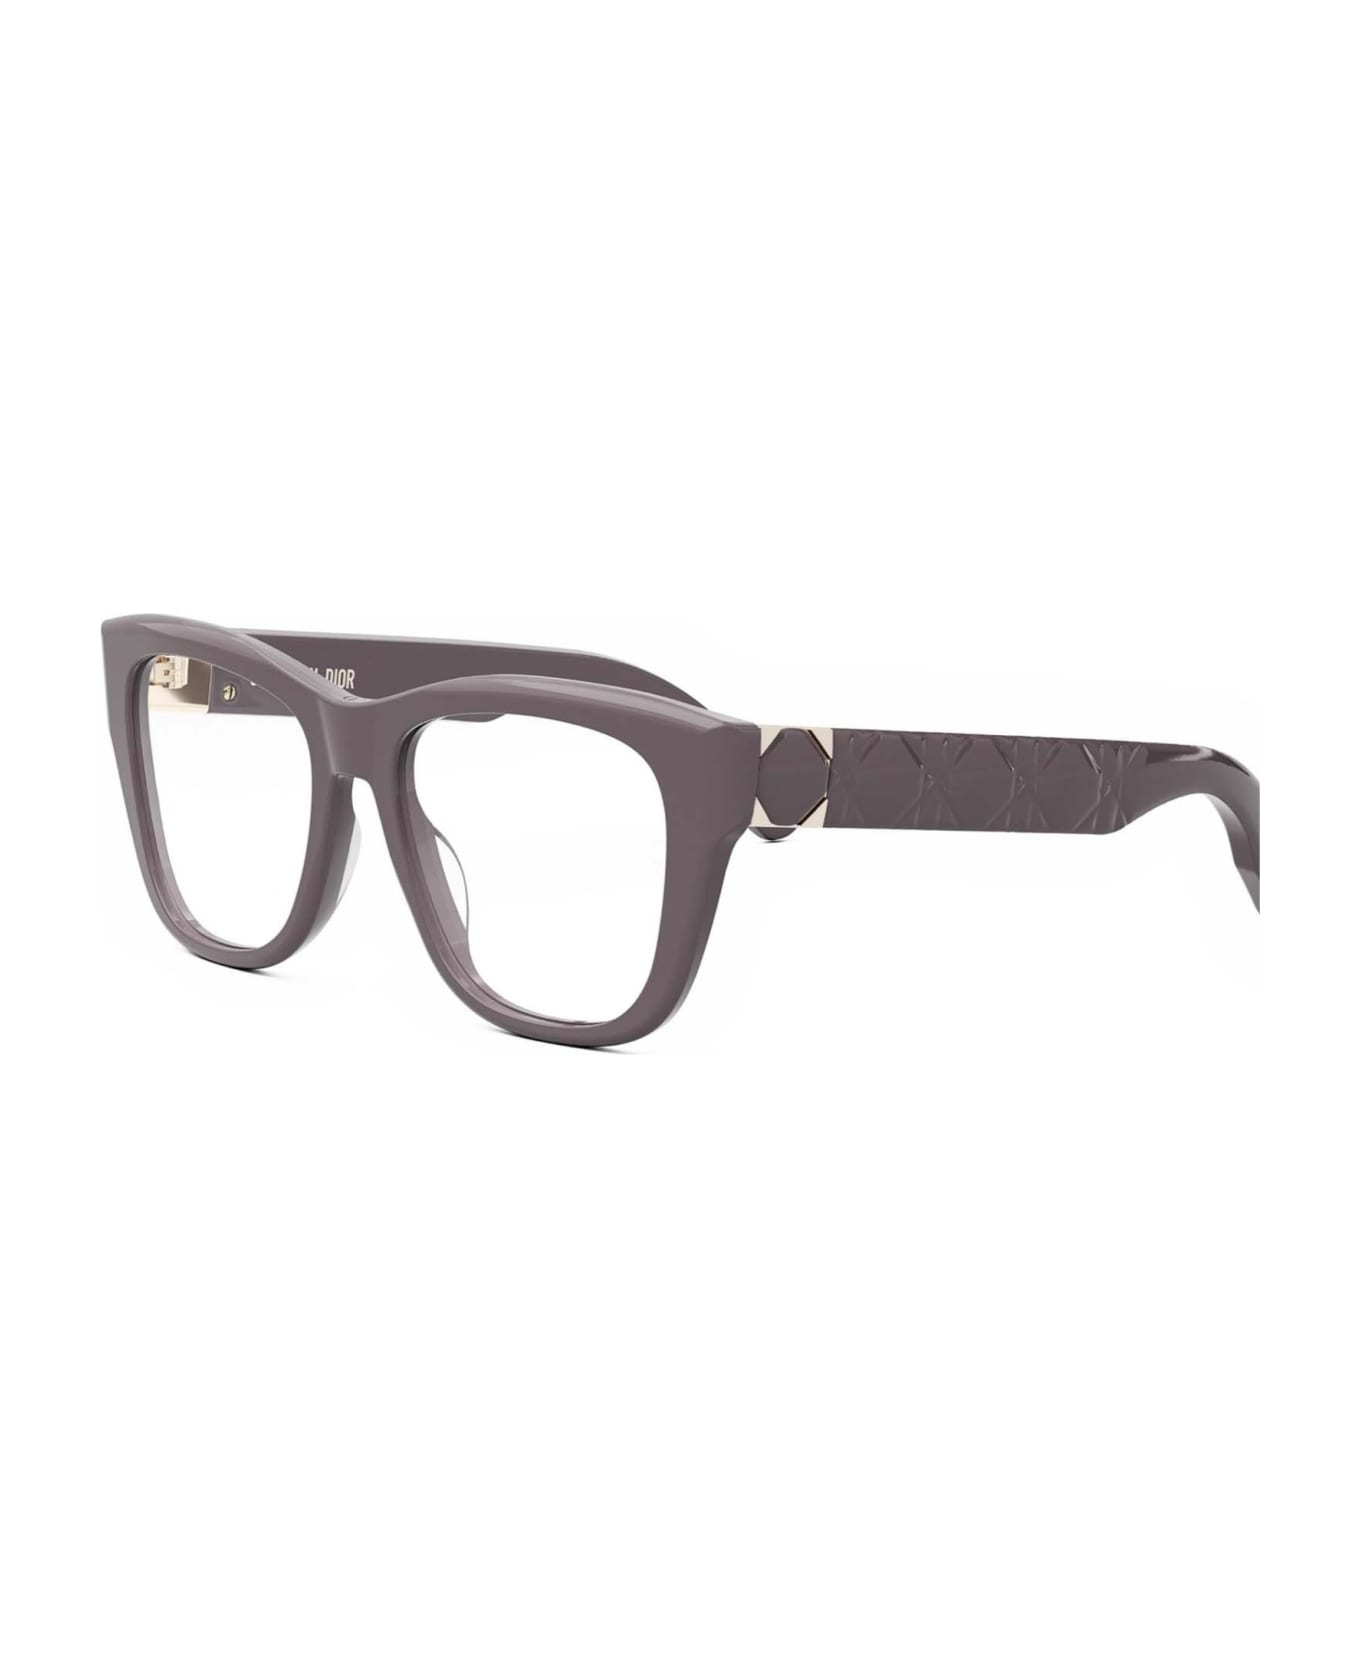 Dior Eyewear Glasses - Grigio